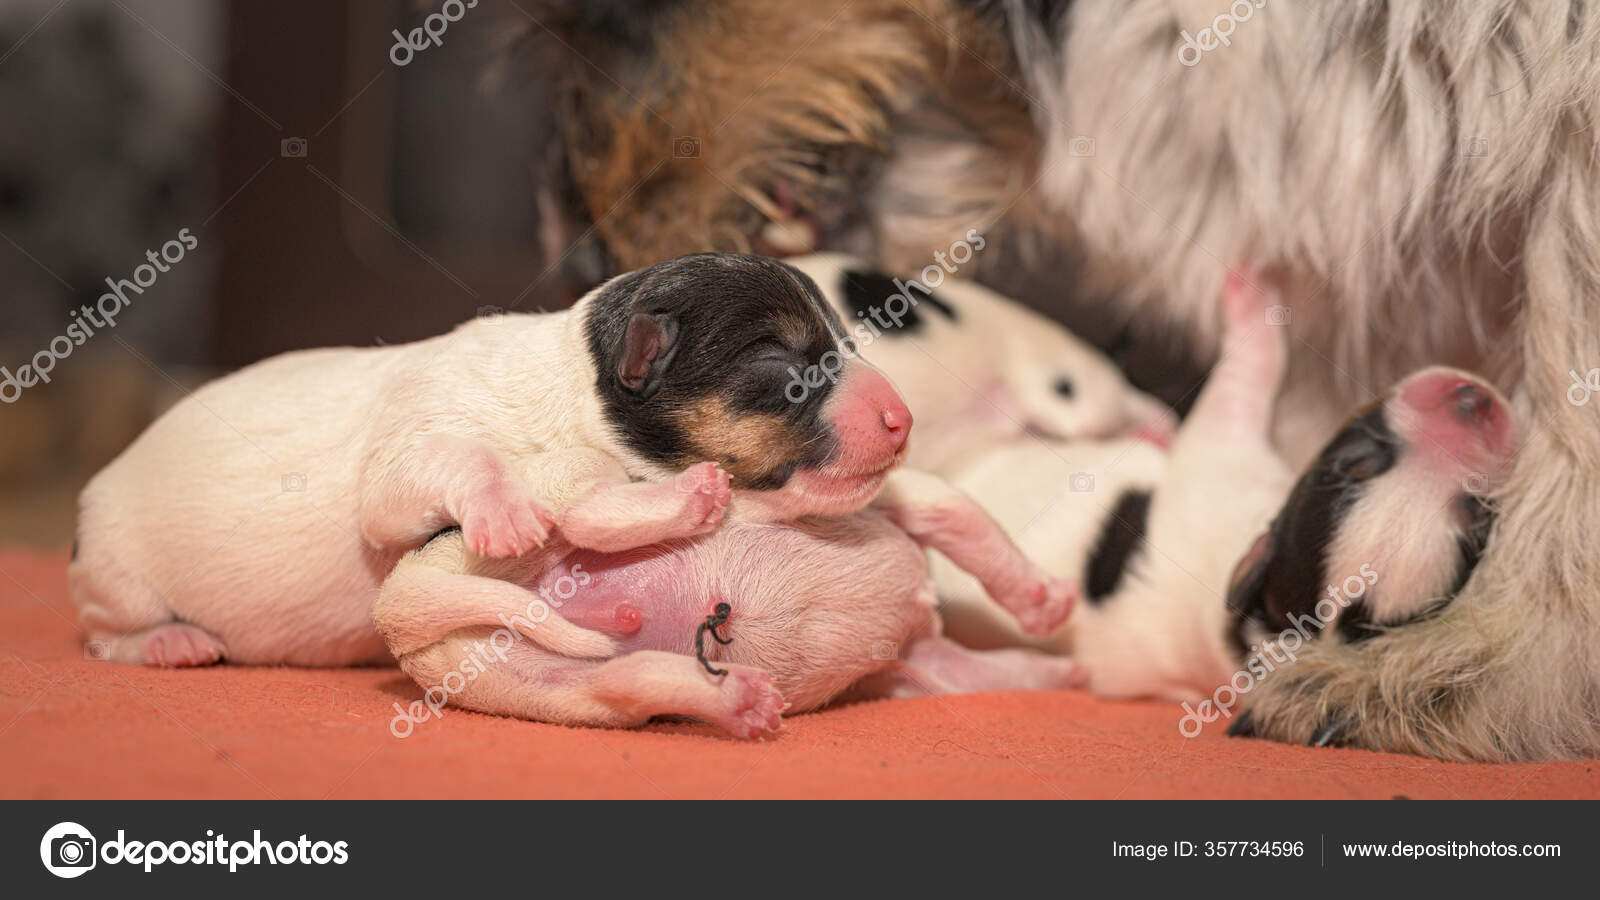 cute newborn dogs